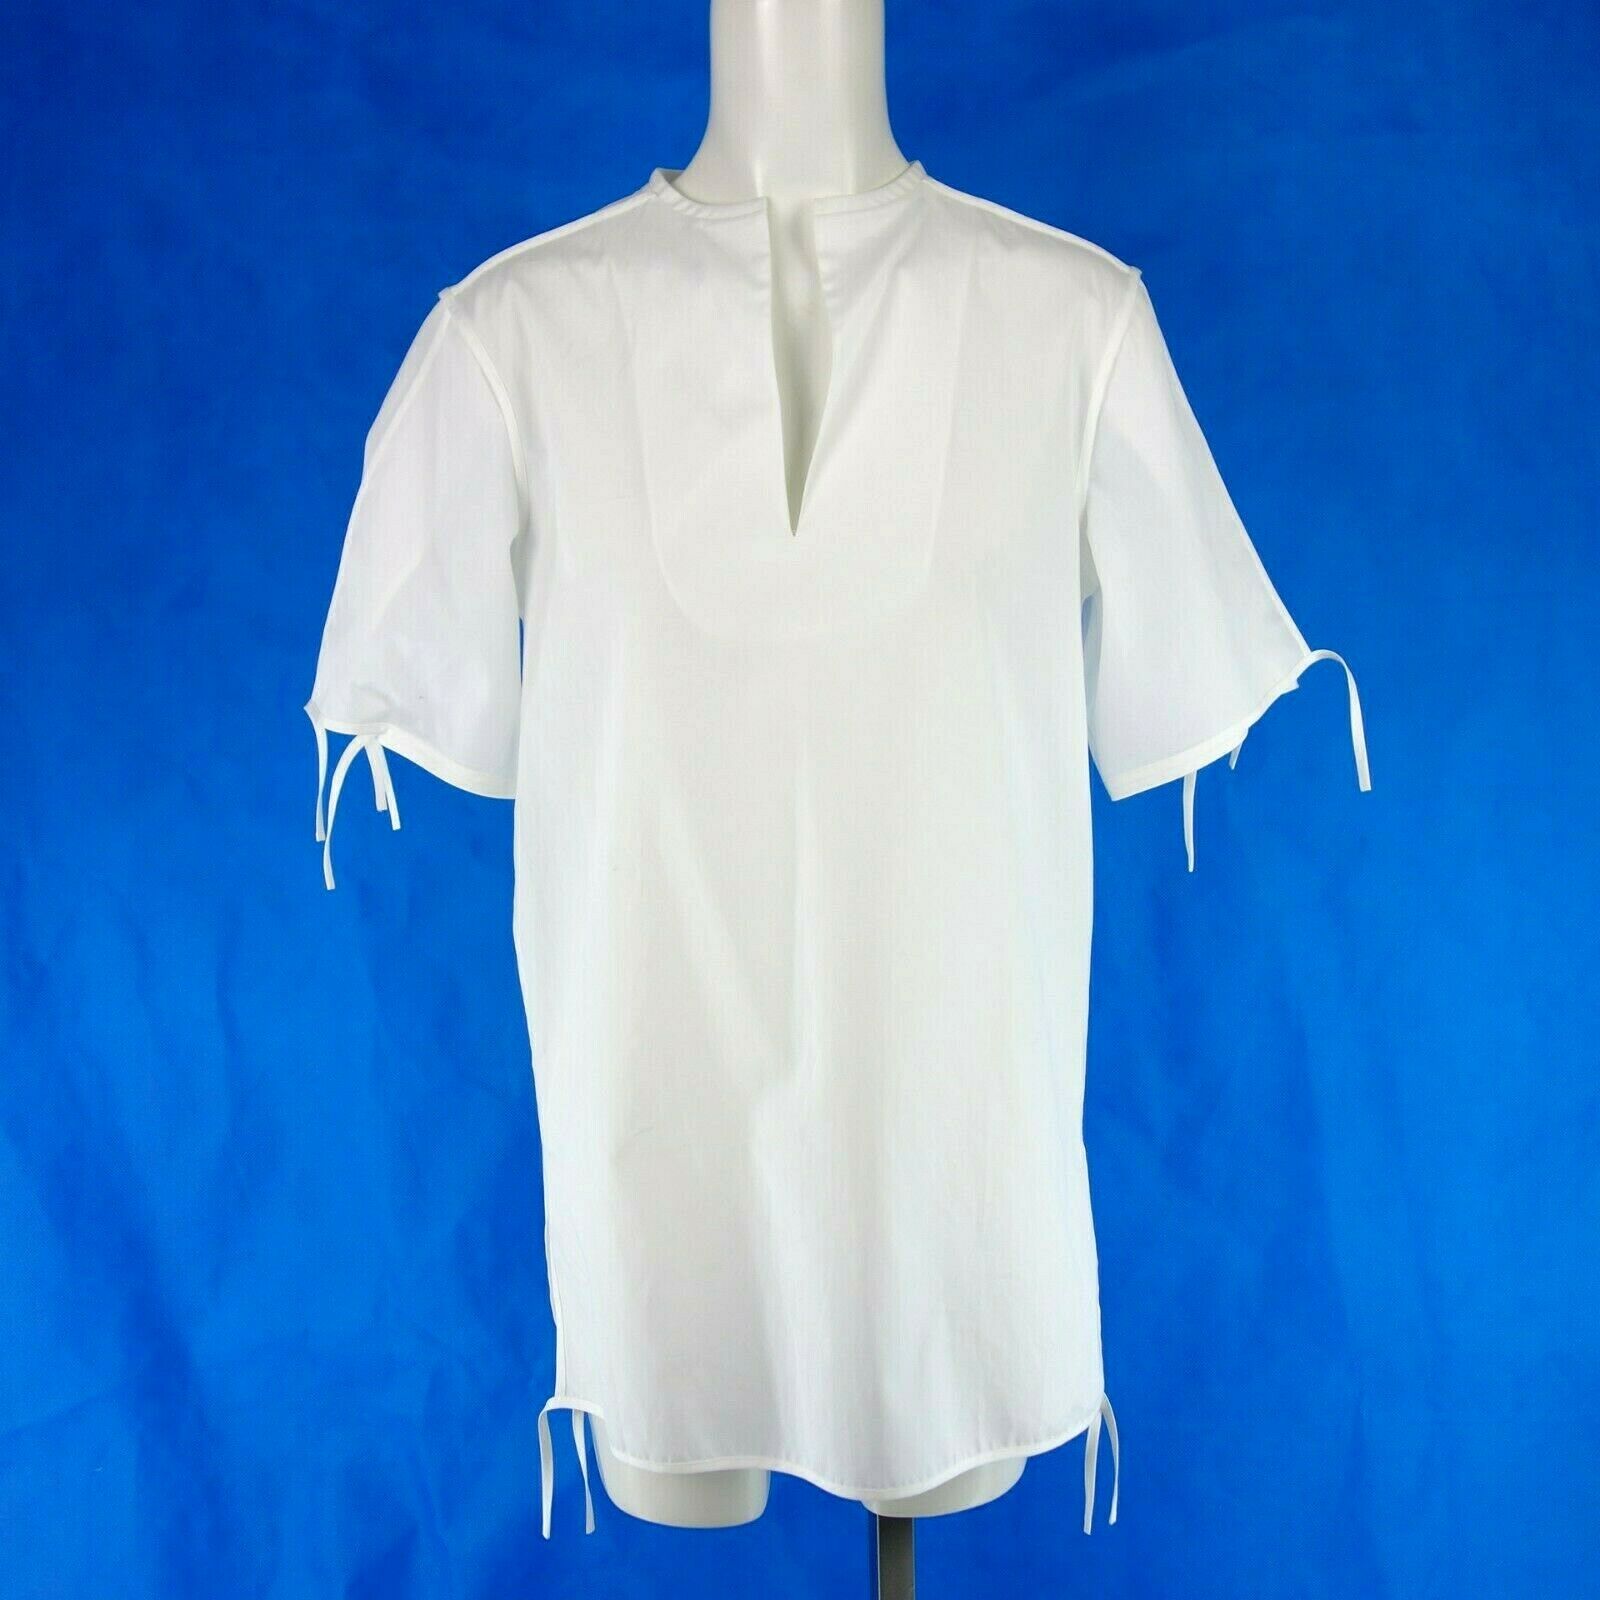 Acne Studios Luxus Damen Tunika Bluse Hemd Oberteil Weiß Baumwollen Np 270 Neu - 36